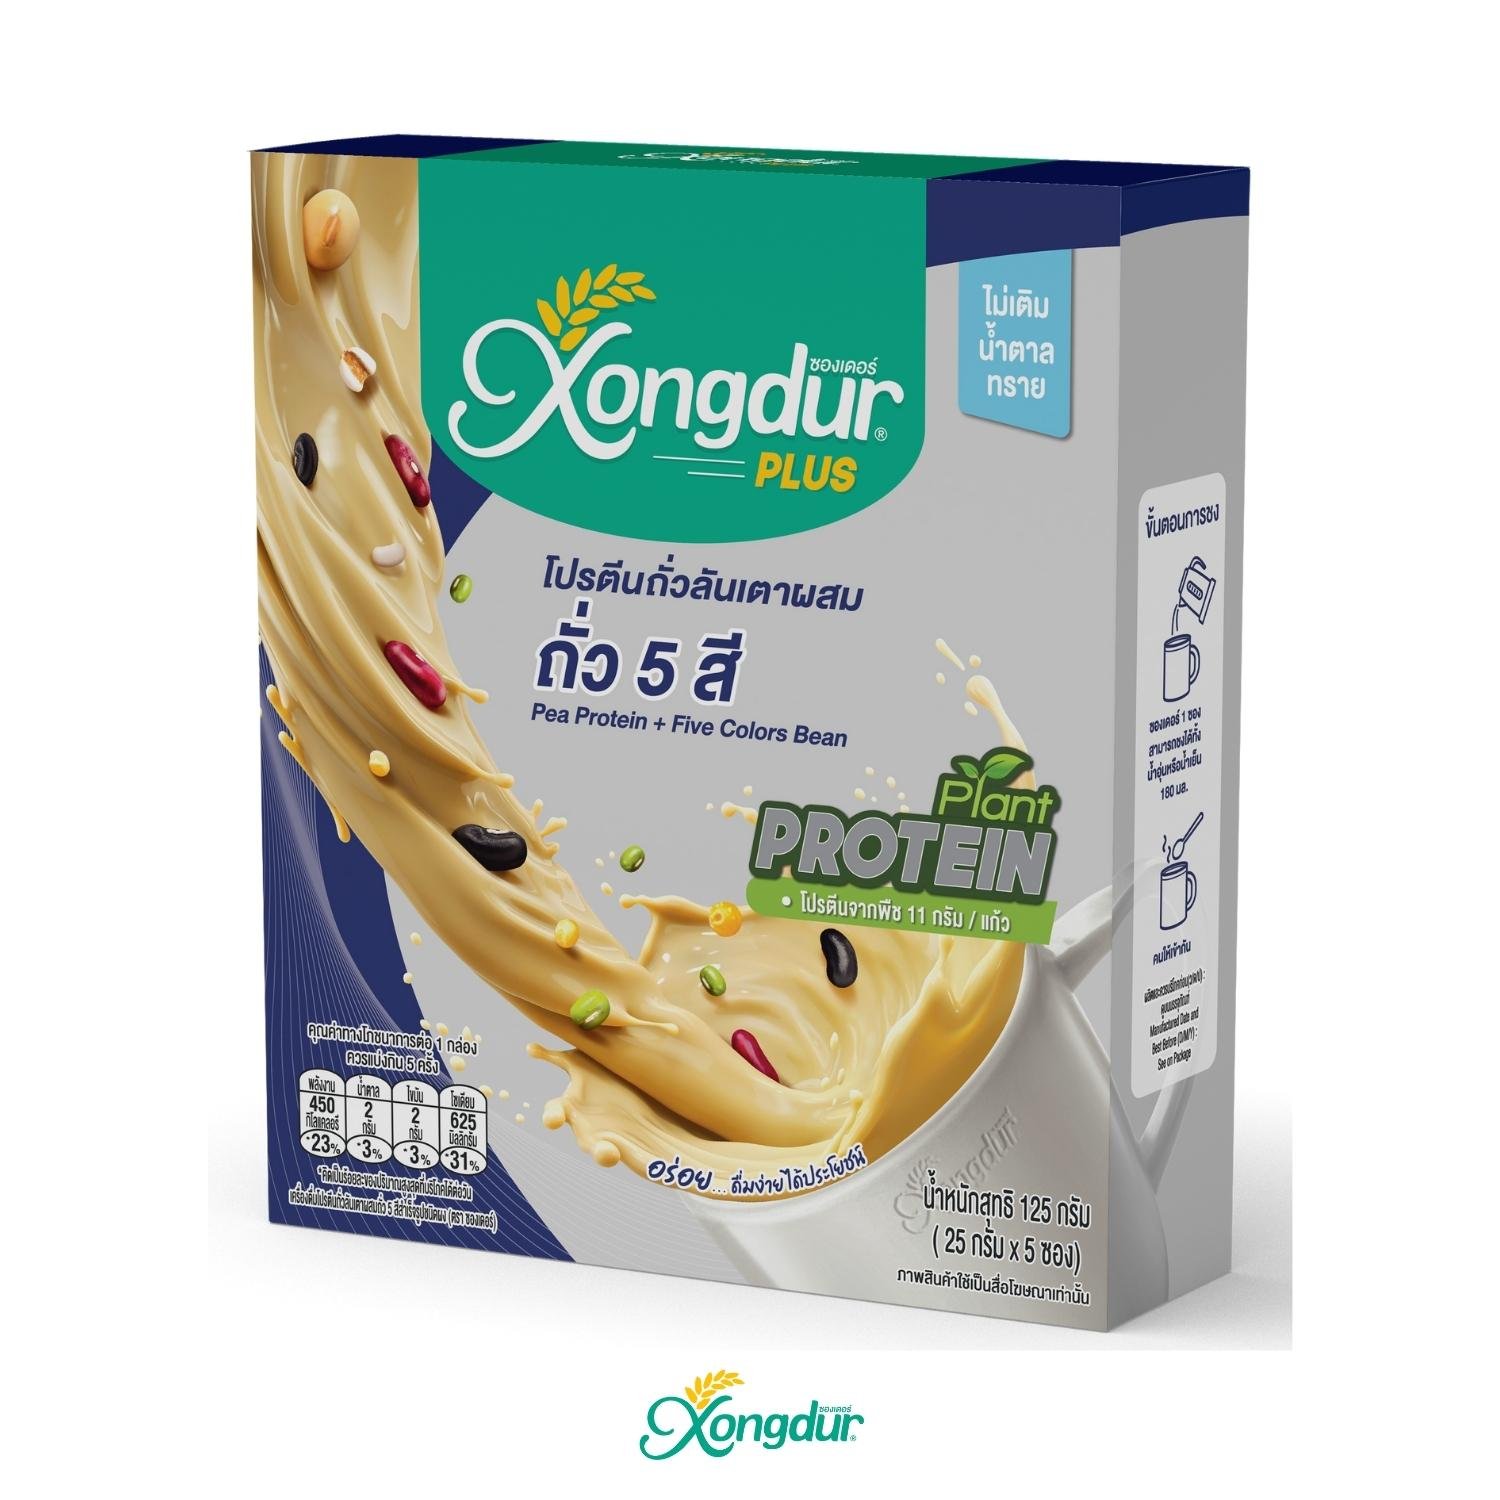 เครื่องดื่มโปรตีนถั่วลันเตา ผสมถั่ว 5 สี ไม่มีน้ำตาล Keto Friendly มีพรีไบโอติกส์ Xongdur Plus ซองเดอร์พลัส